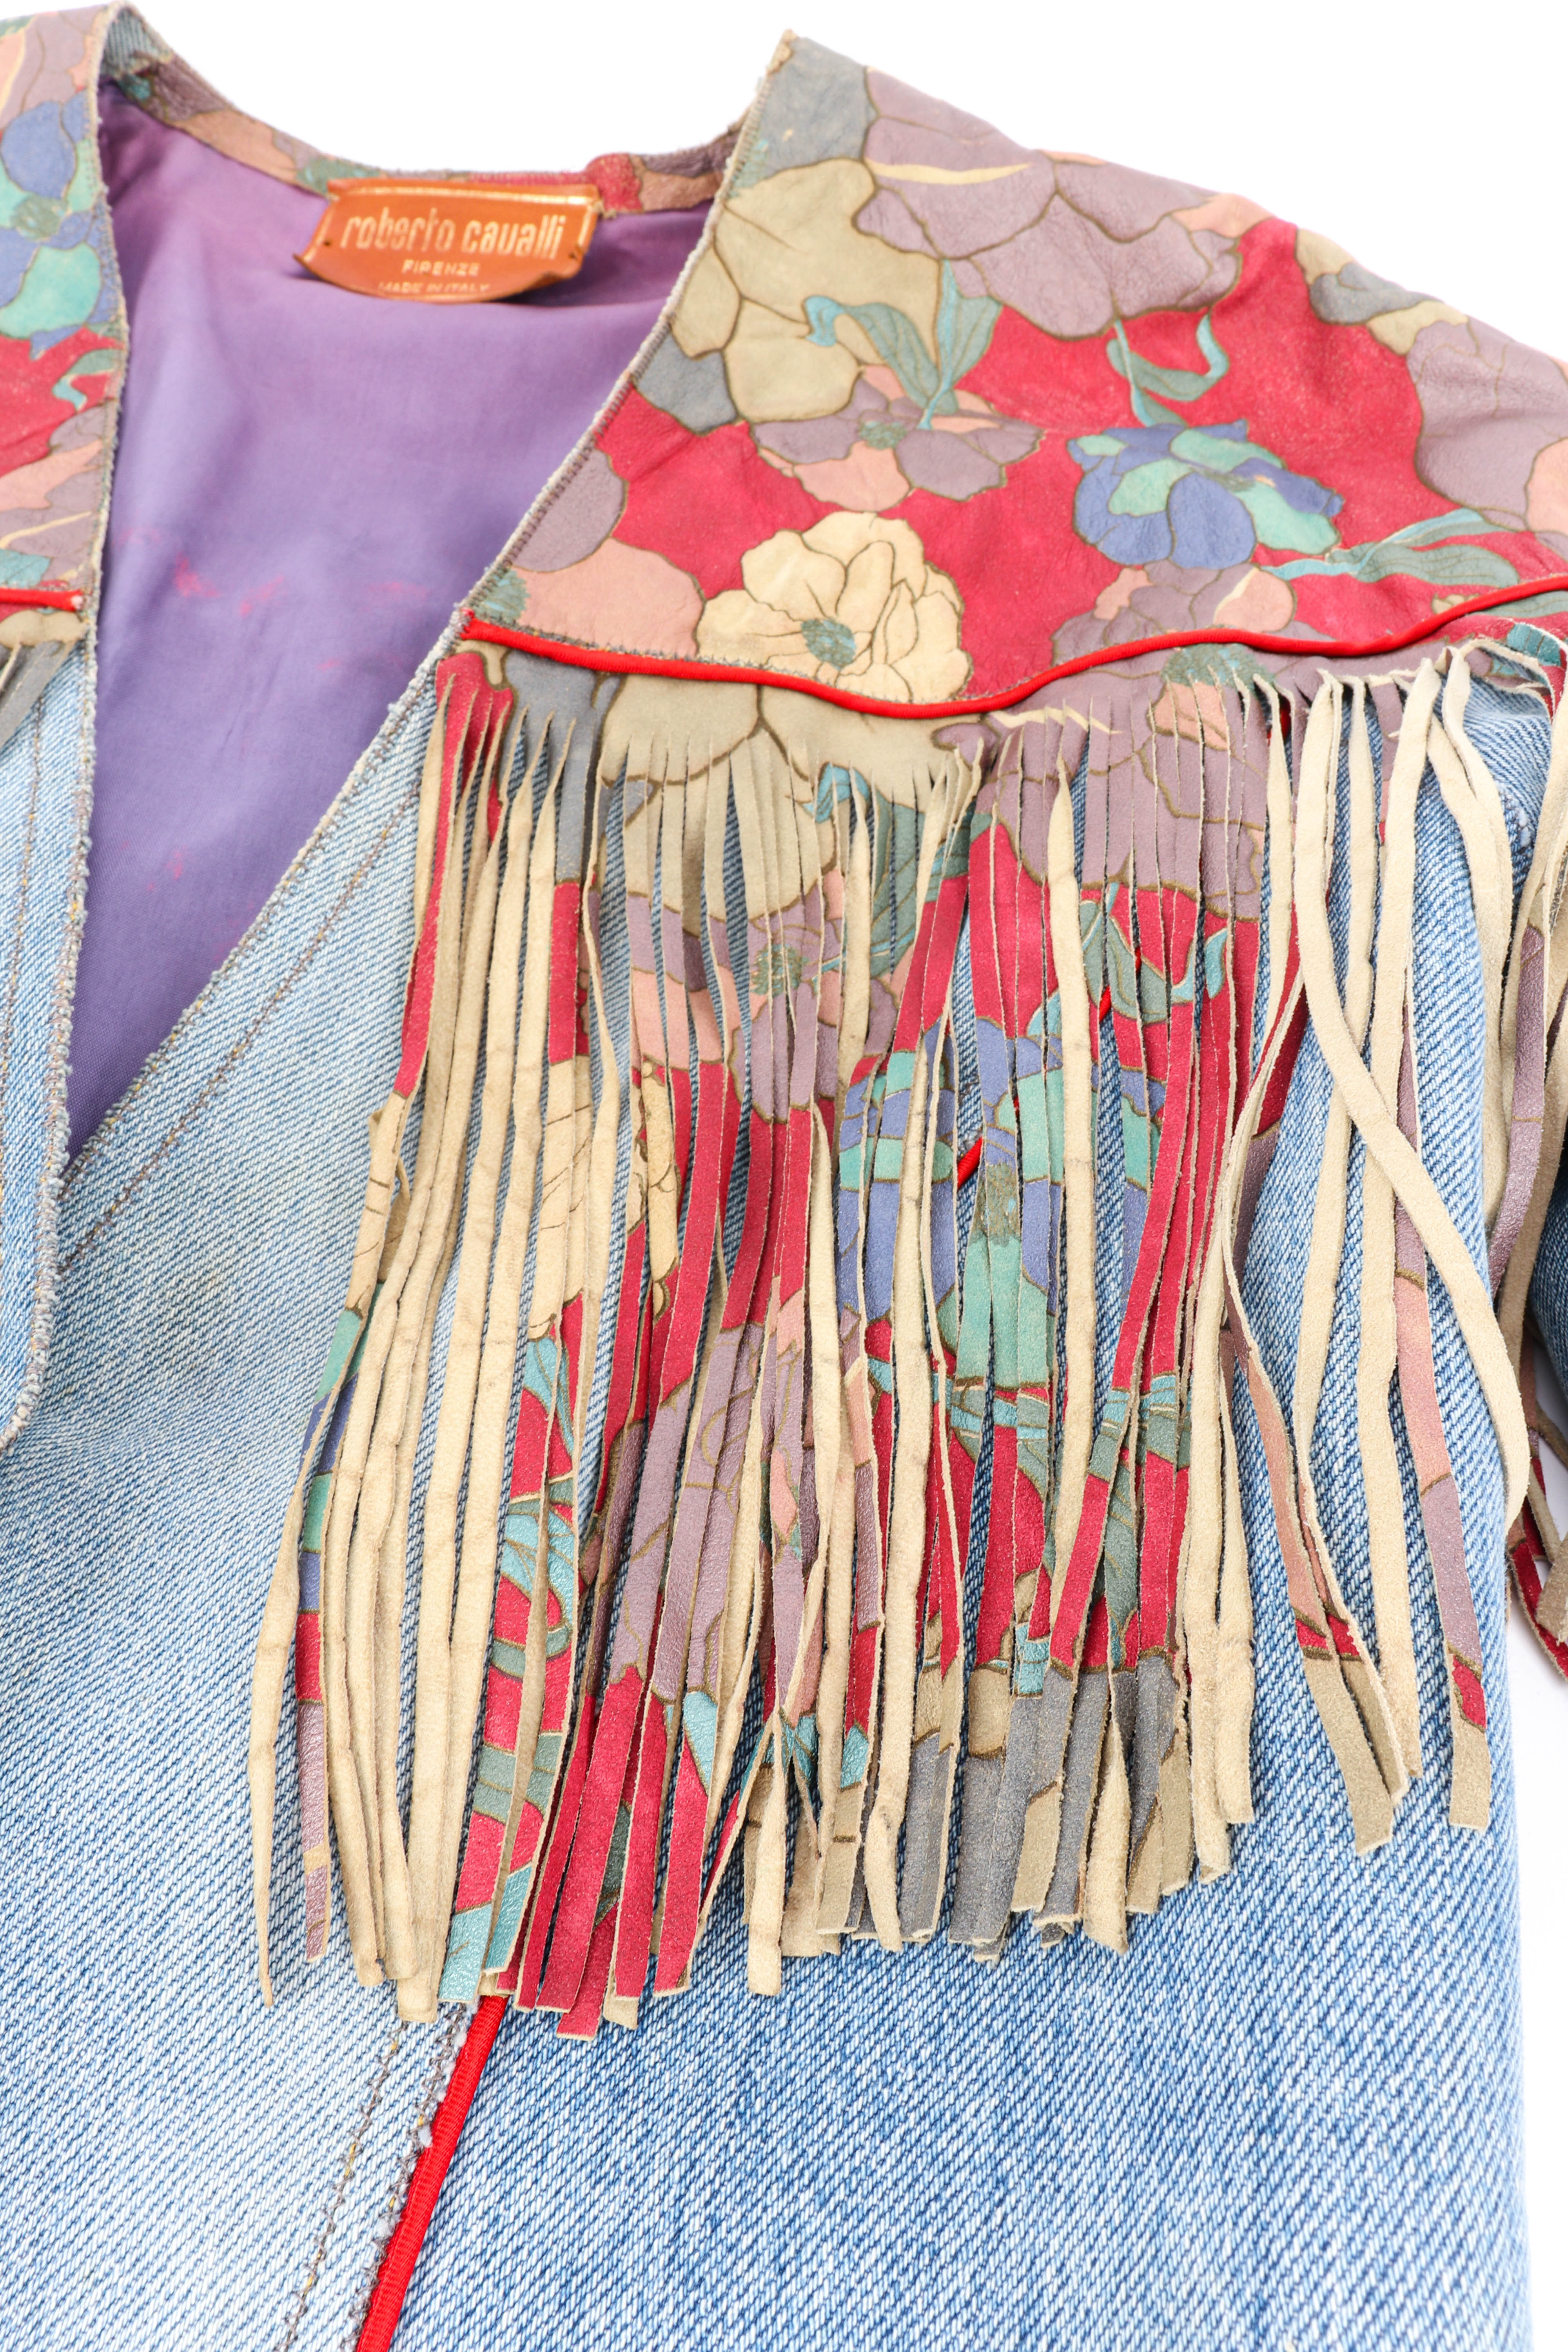 Vintage Roberto Cavalli Floral Denim and Leather Fringe Jacket fringe closeup @recessla